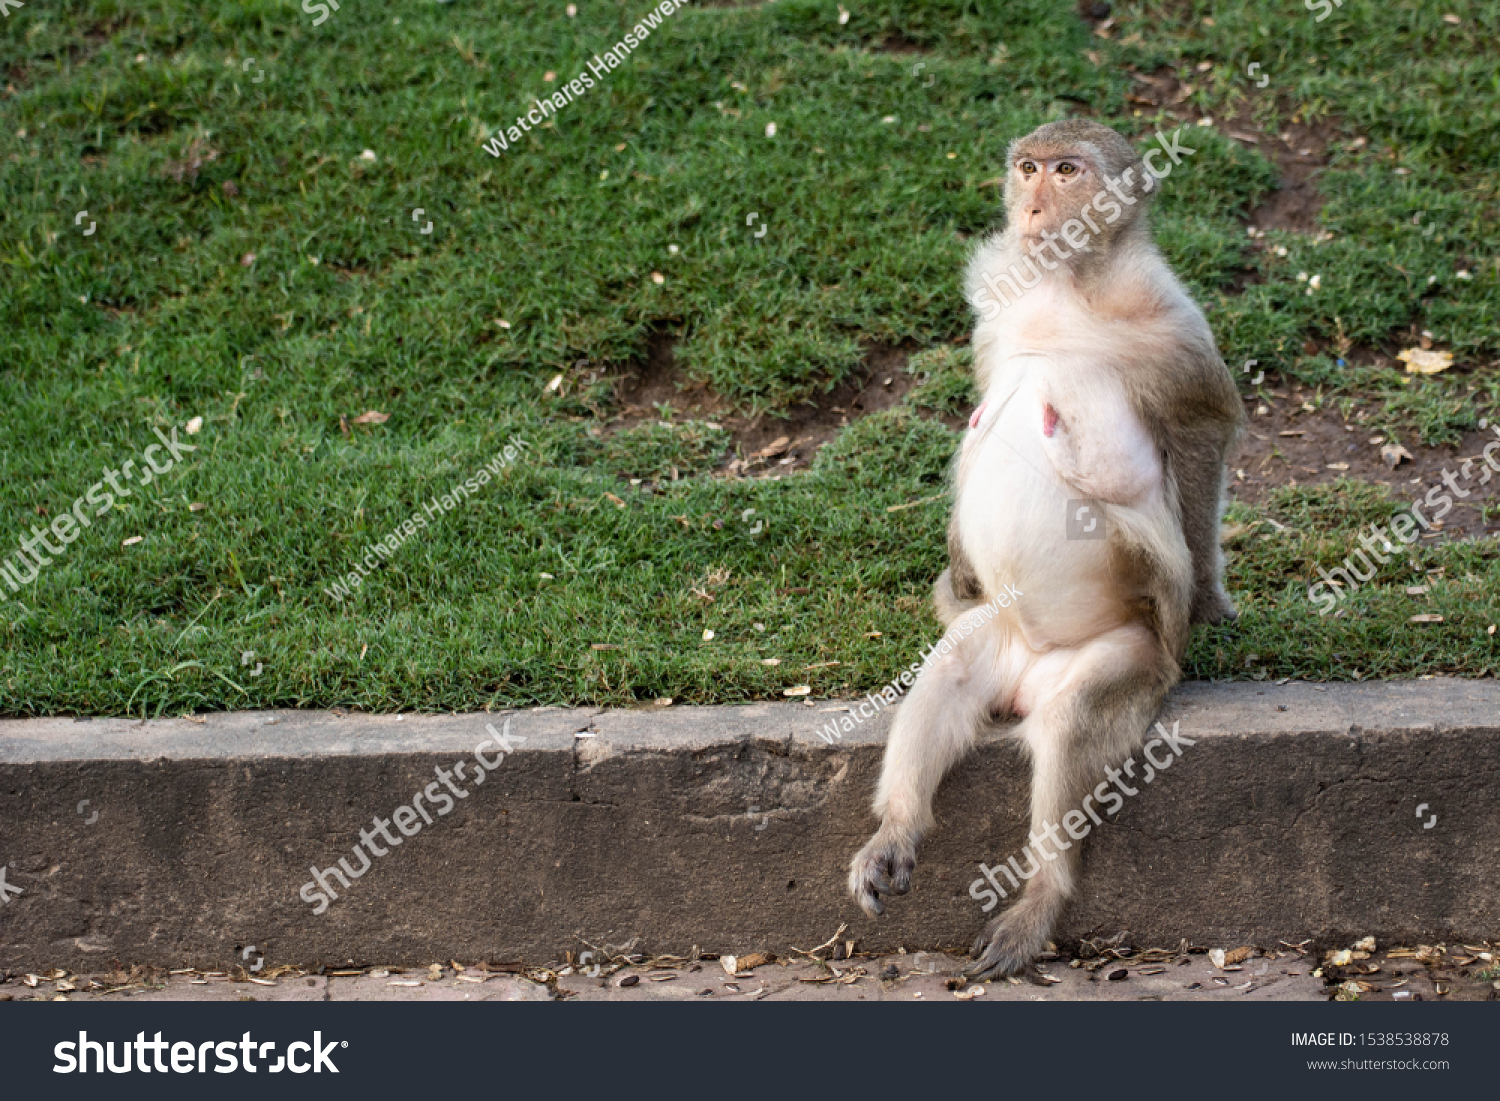 Monkey nude